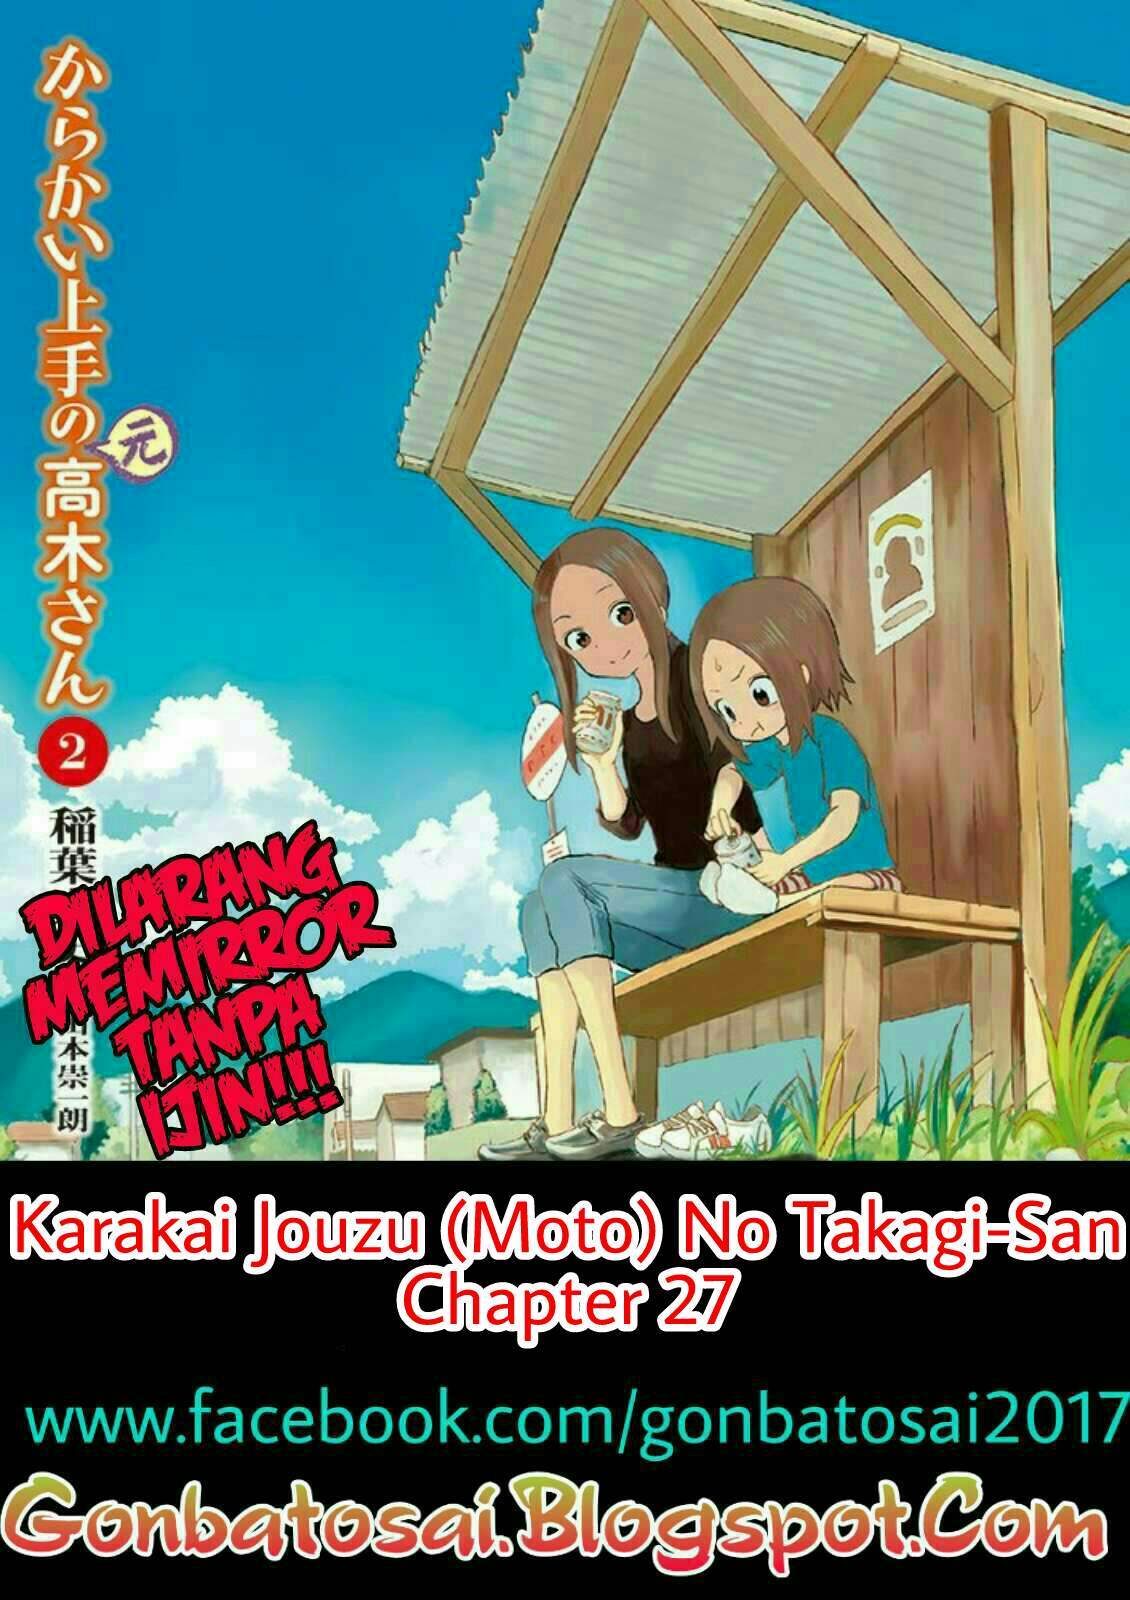 Karakai Jouzu no (Moto) Takagi-san Chapter 27